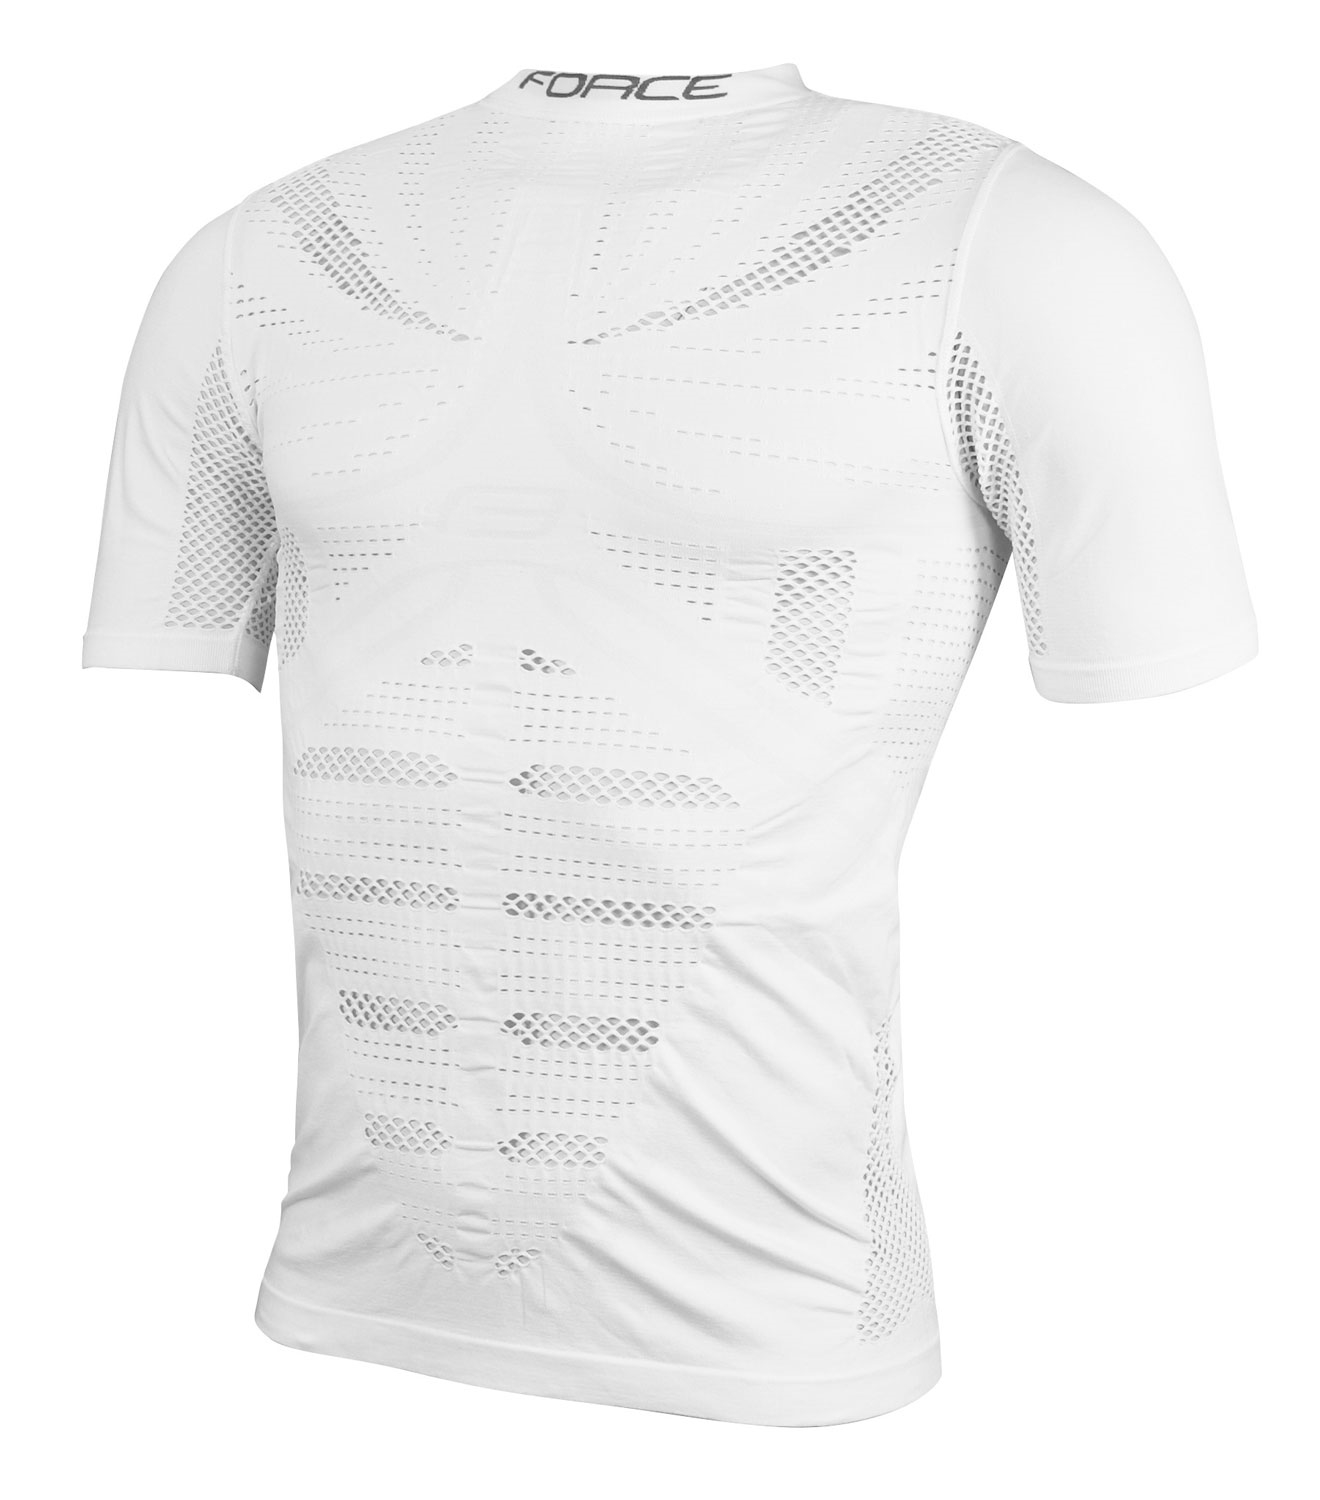 triko/funkční prádlo FORCE WIND krátký rukáv,bílé S-M